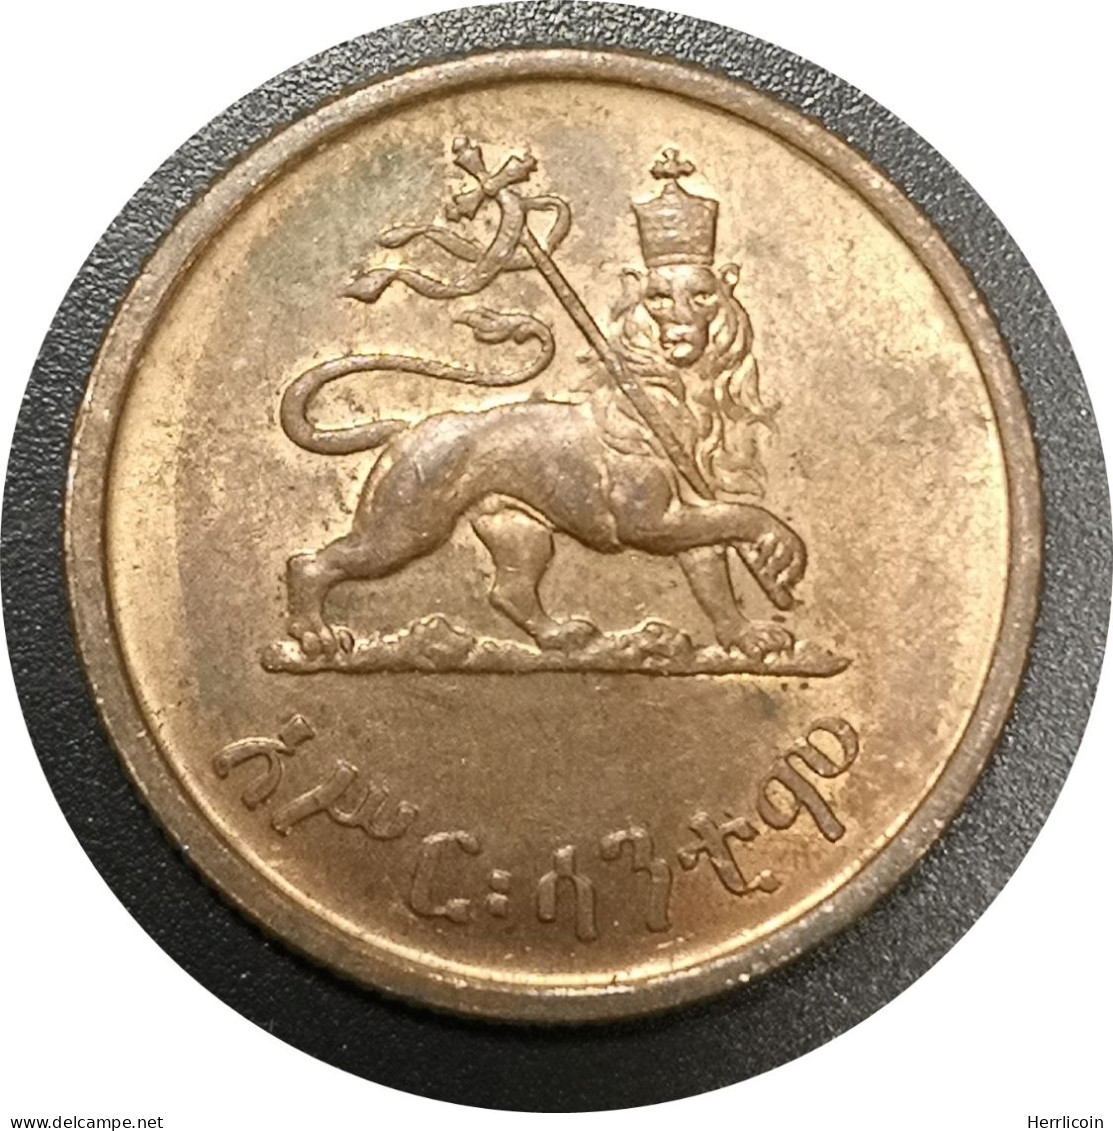 Monnaie Ethiopie - 1936 (1945 - 1975) 10 Santeem - Hailé Selassié I - Ethiopie